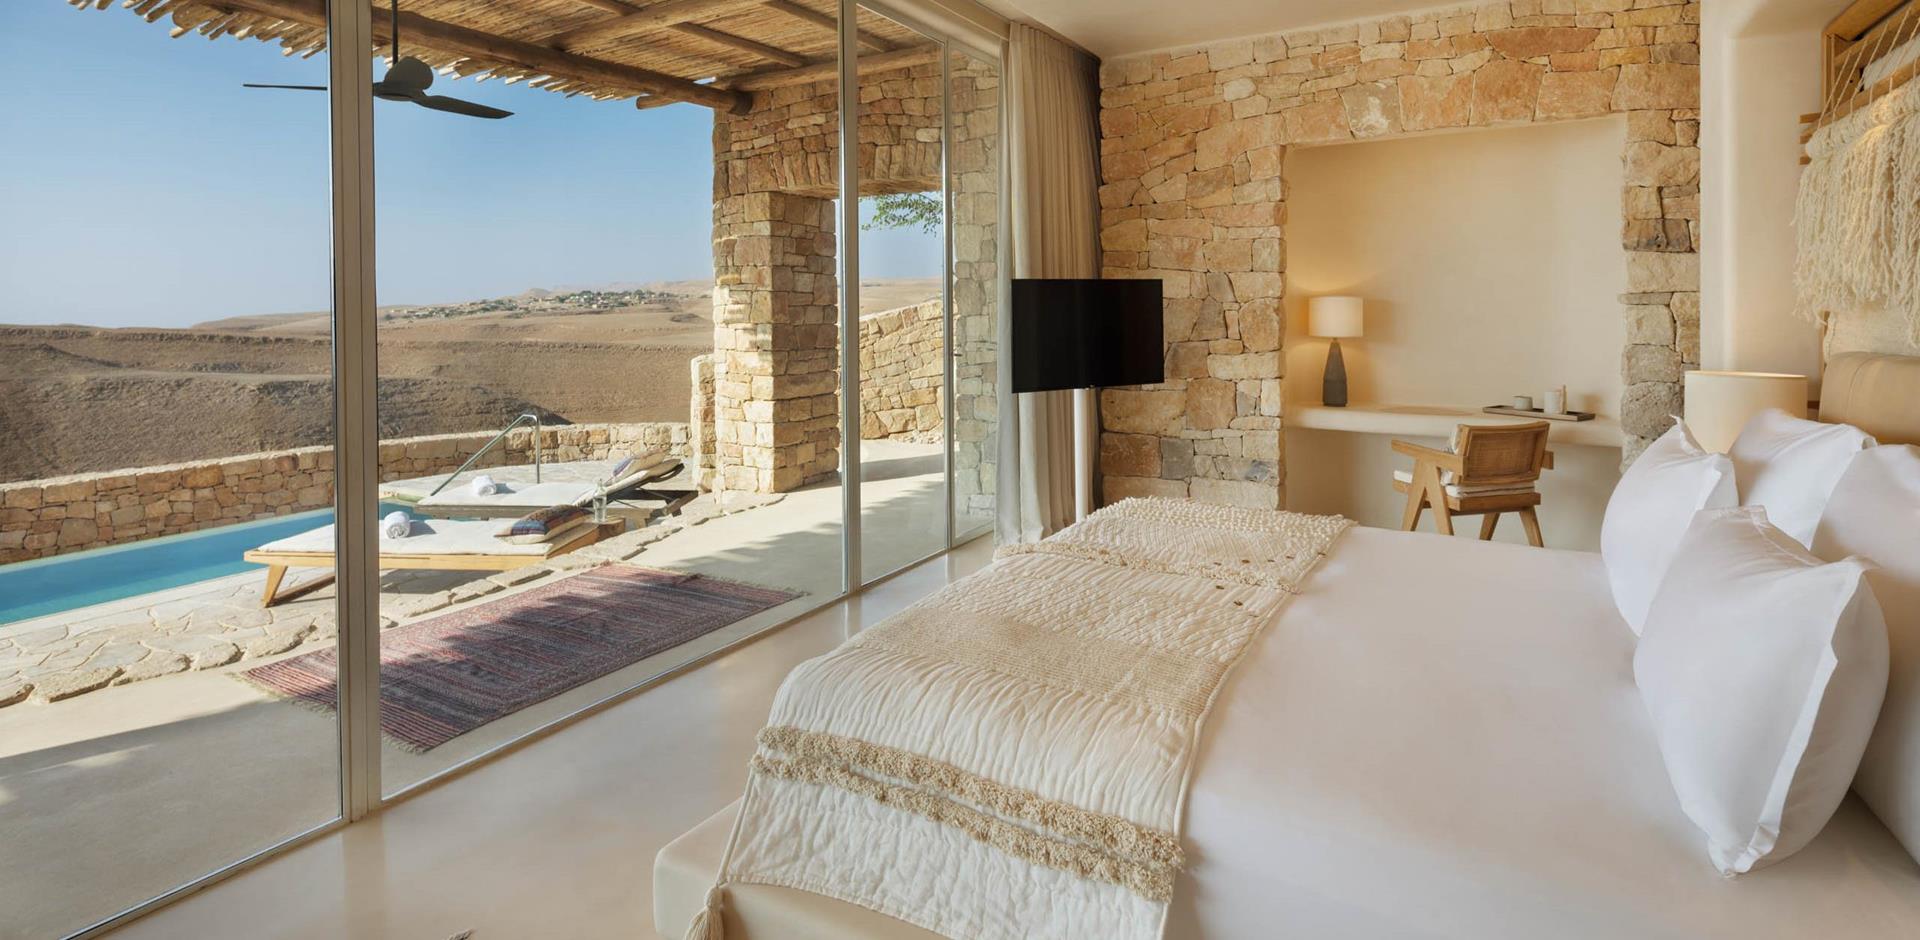 Villa bedroom, Six Senses Shaharut, Negev Desert, Israel